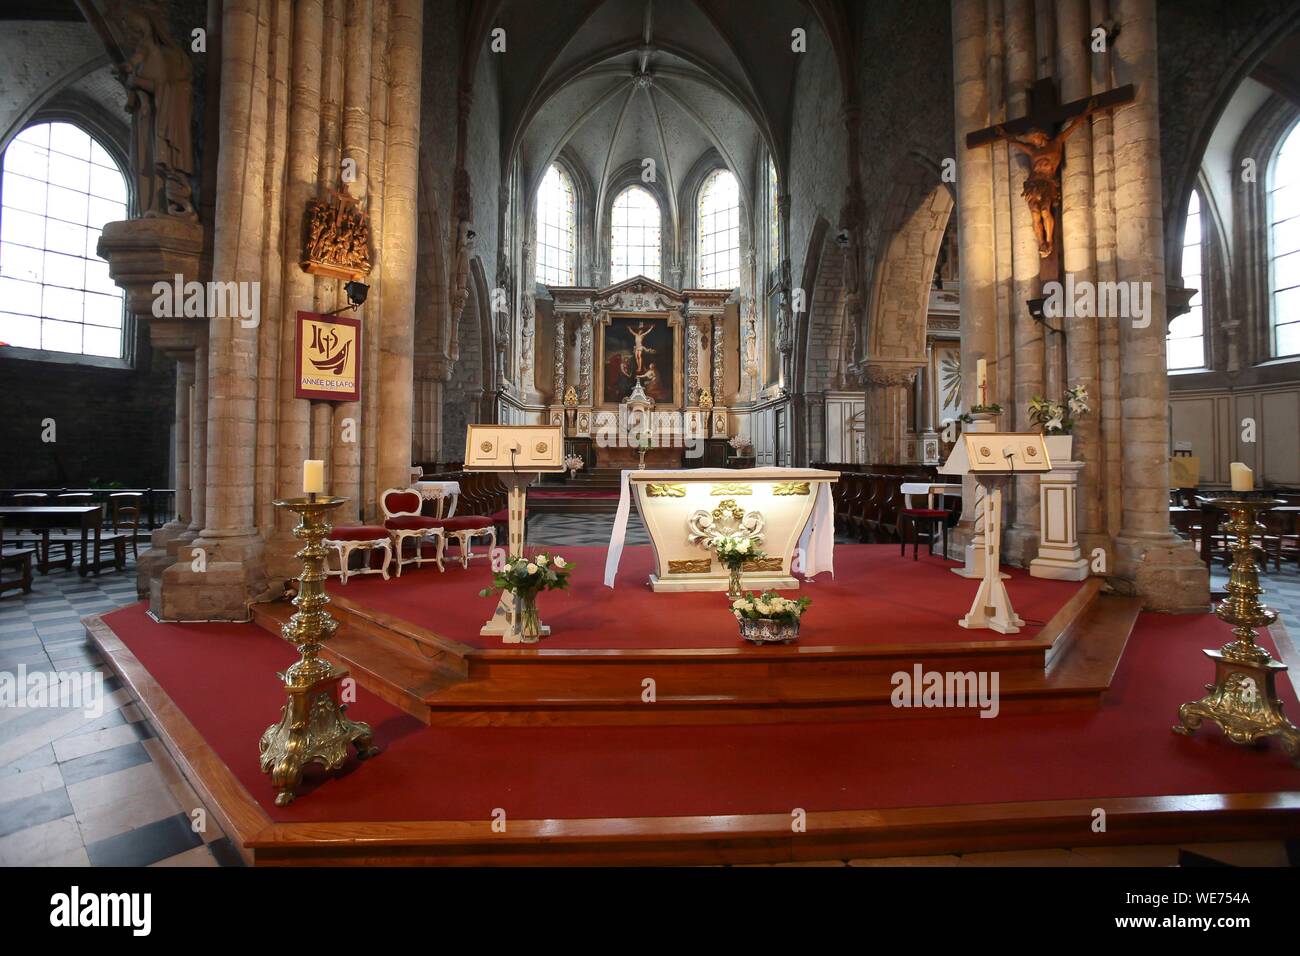 France, Pas de Calais, Boulogne sur Mer, Interior of the St Nicolas Church in Boulogne sur Mer Stock Photo